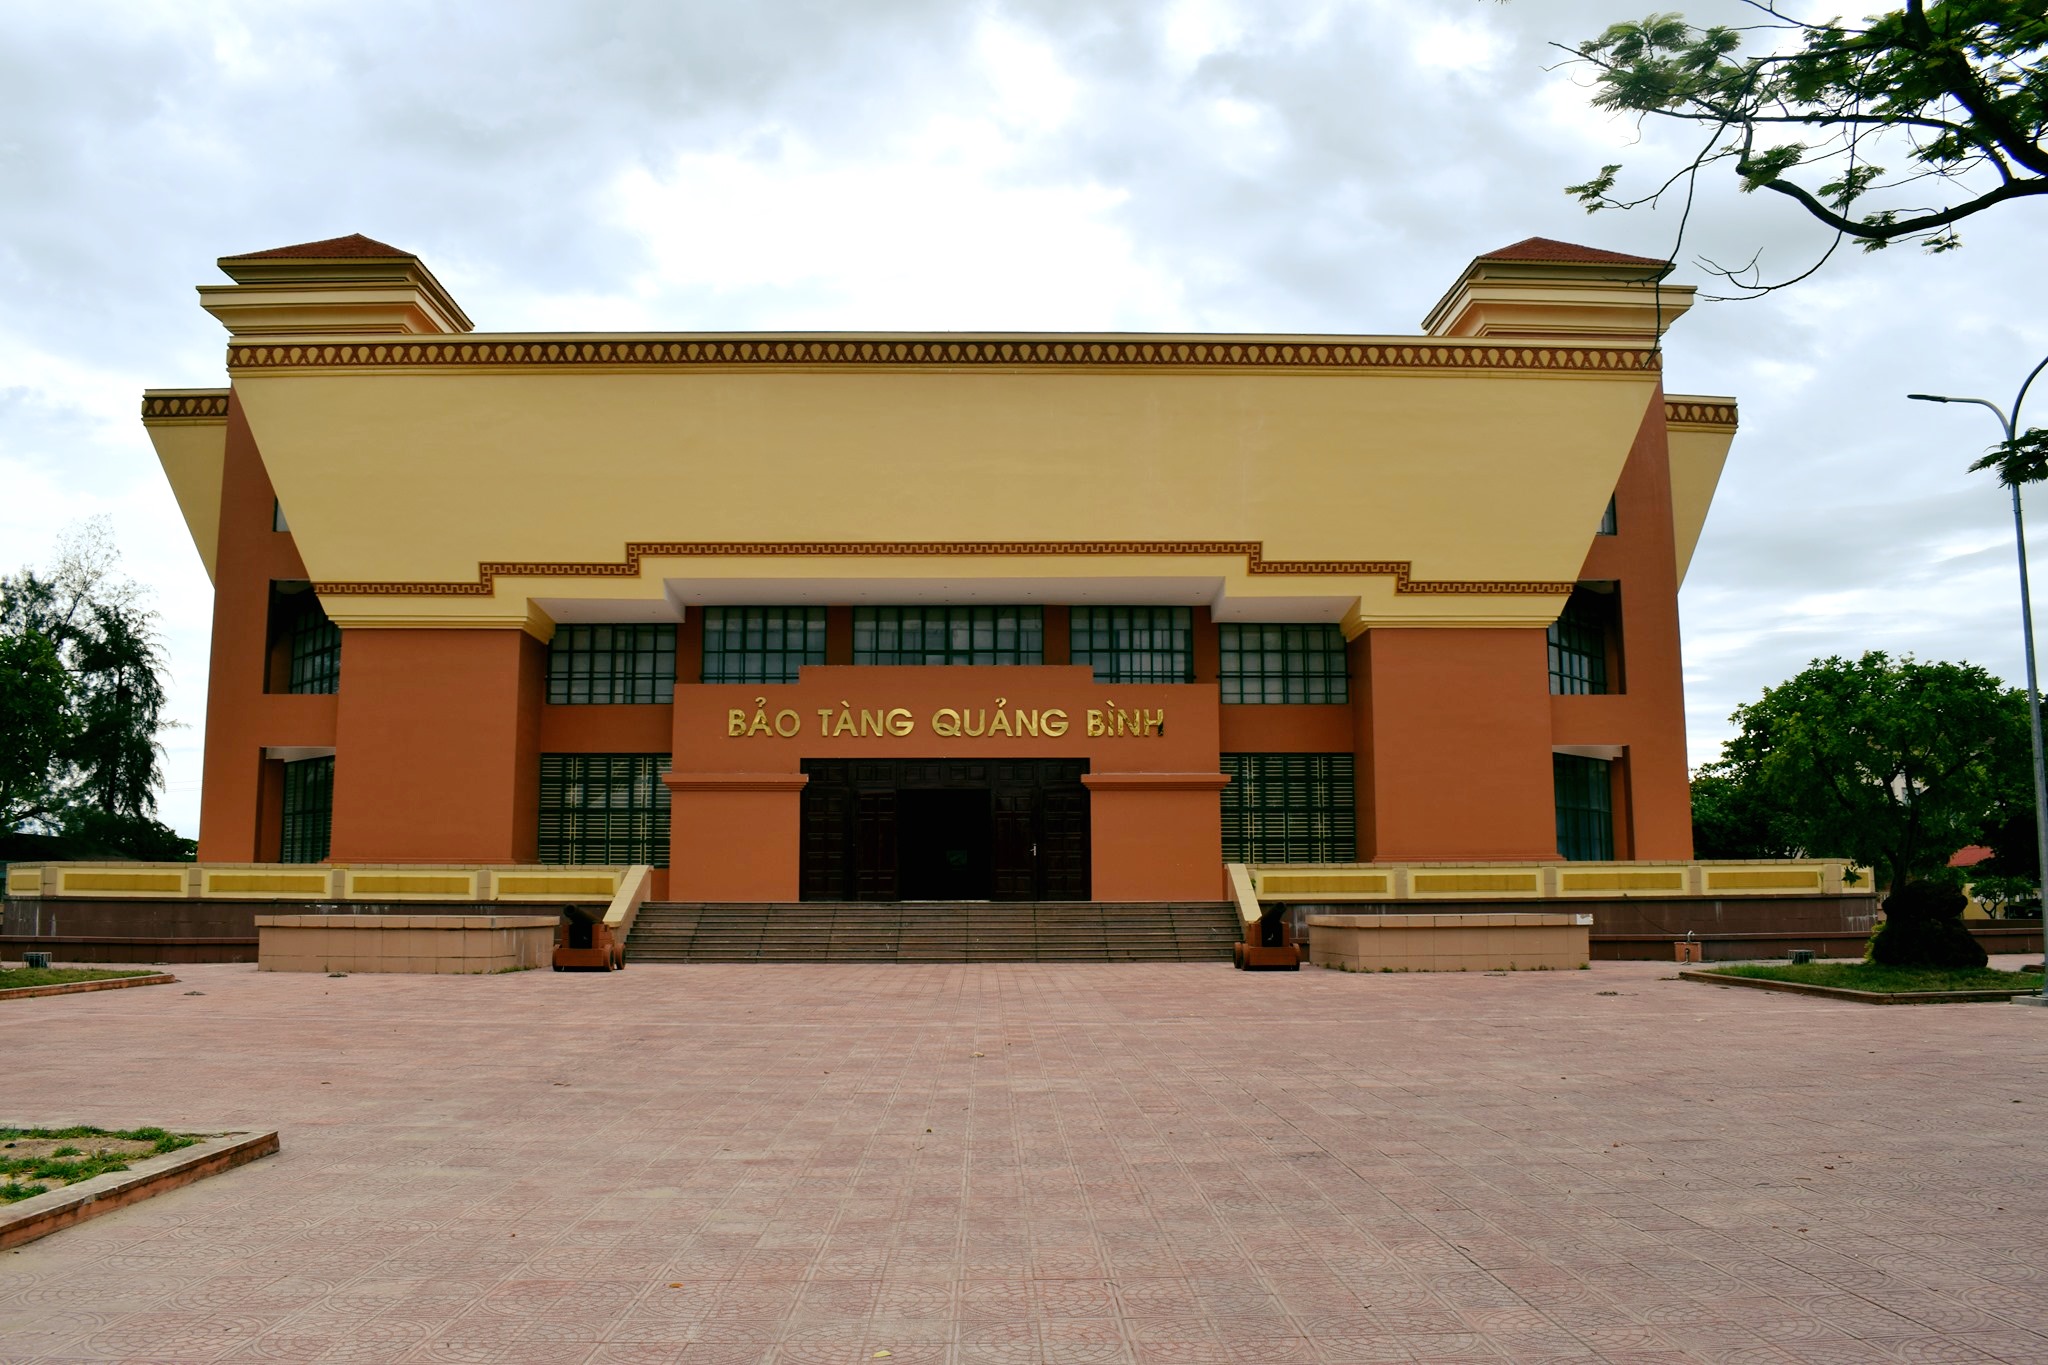 Bảo tàng Quảng Bình